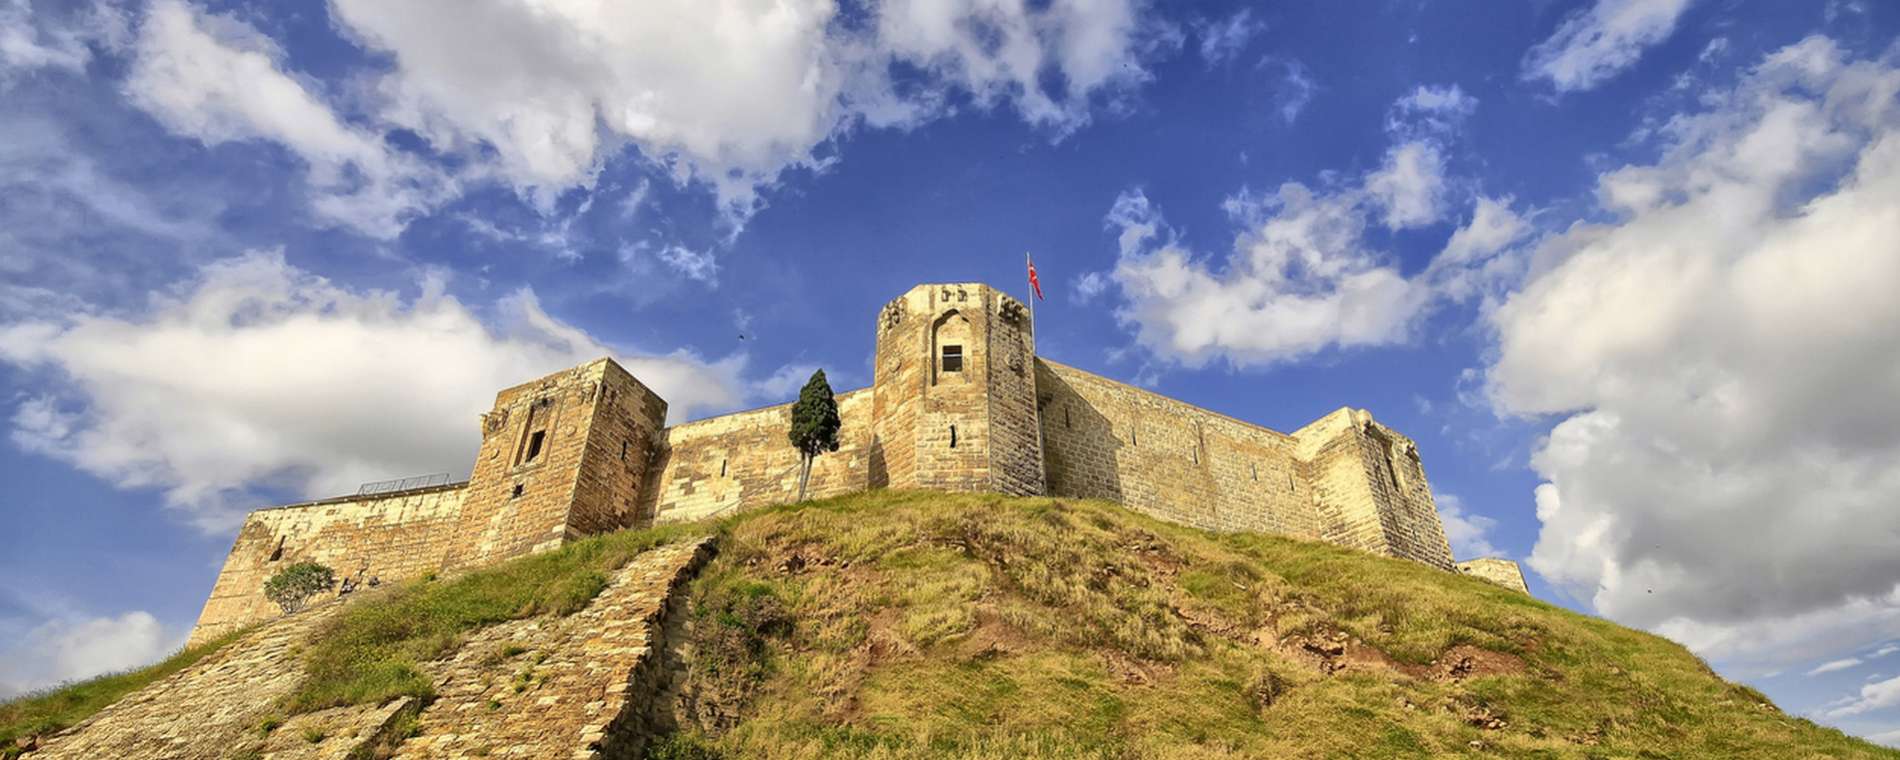 В Турции землетрясение разрушило историческую крепость Газиантеп из списка ЮНЕСКО